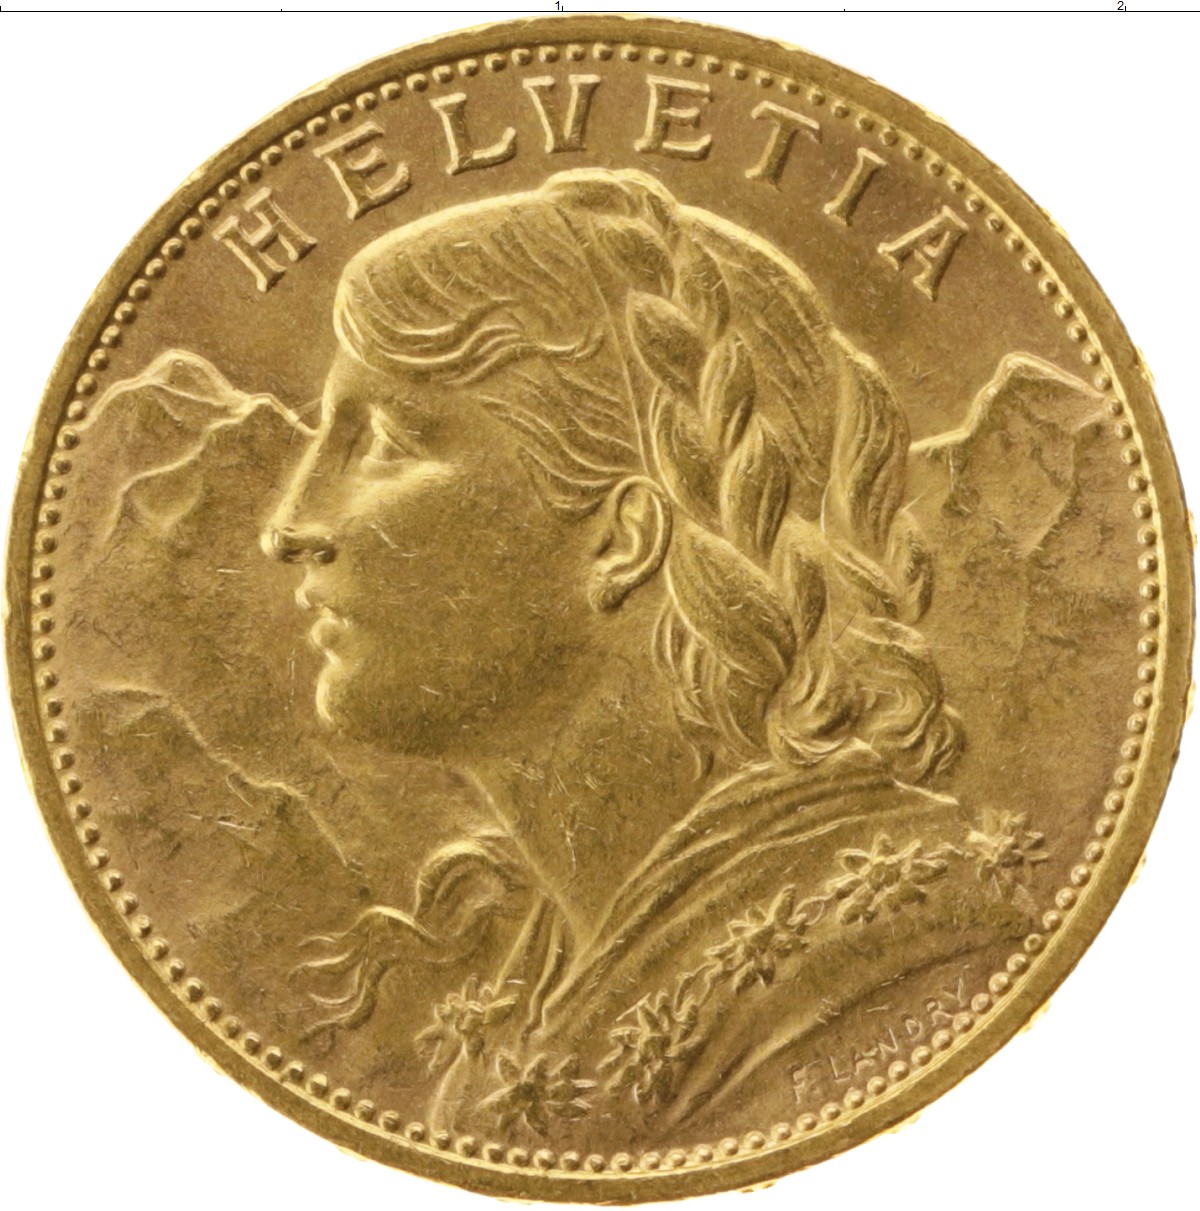 20 франков золотом